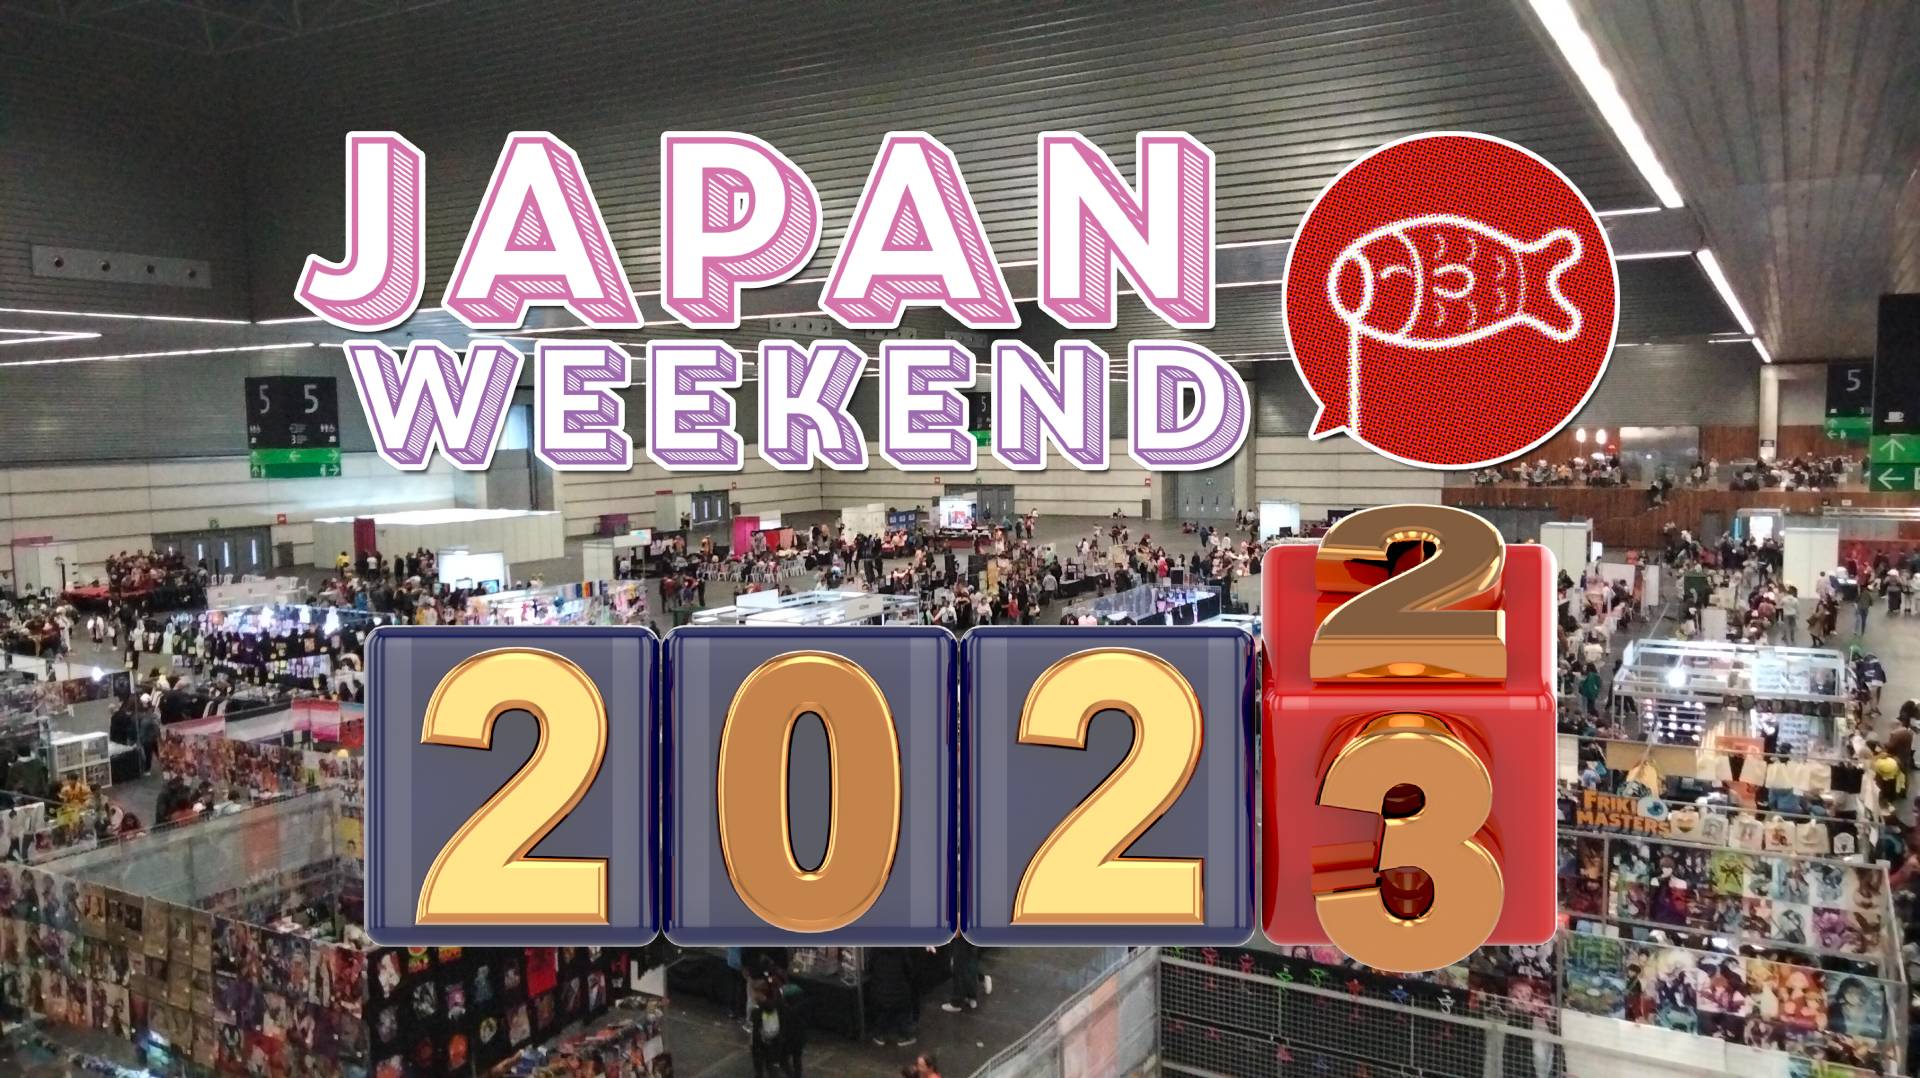 Japan Weekend Bilbao: Febrero 2023, una aventura llena de encuentros